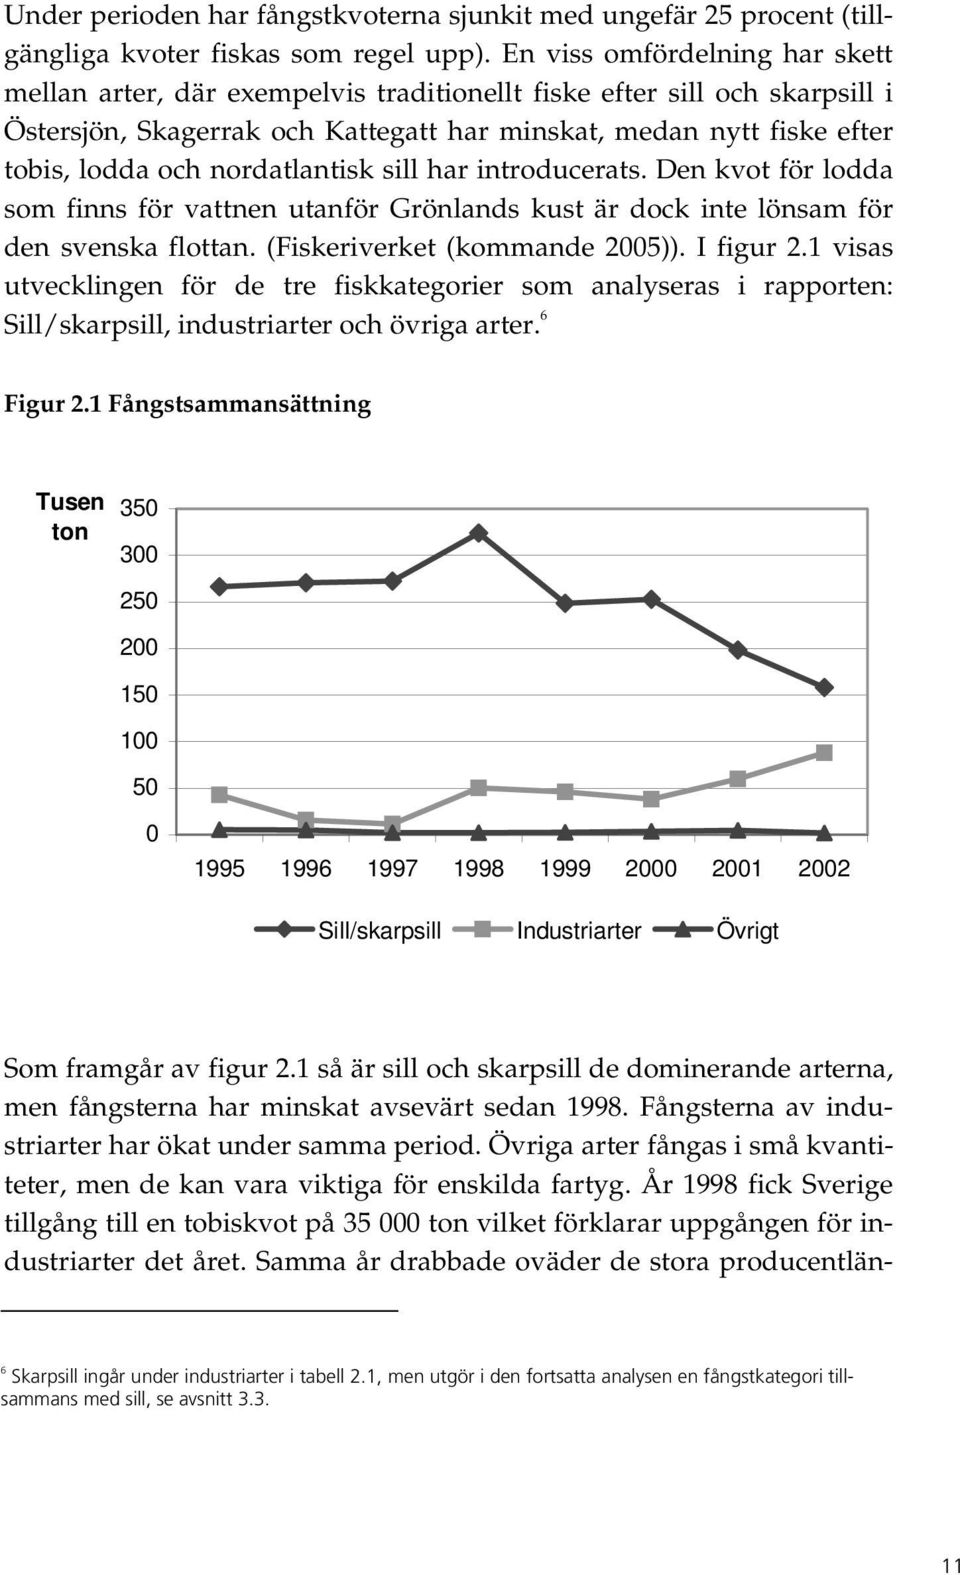 nordatlantisk sill har introducerats. Den kvot för lodda som finns för vattnen utanför Grönlands kust är dock inte lönsam för den svenska flottan. (Fiskeriverket (kommande 2005)). I figur 2.